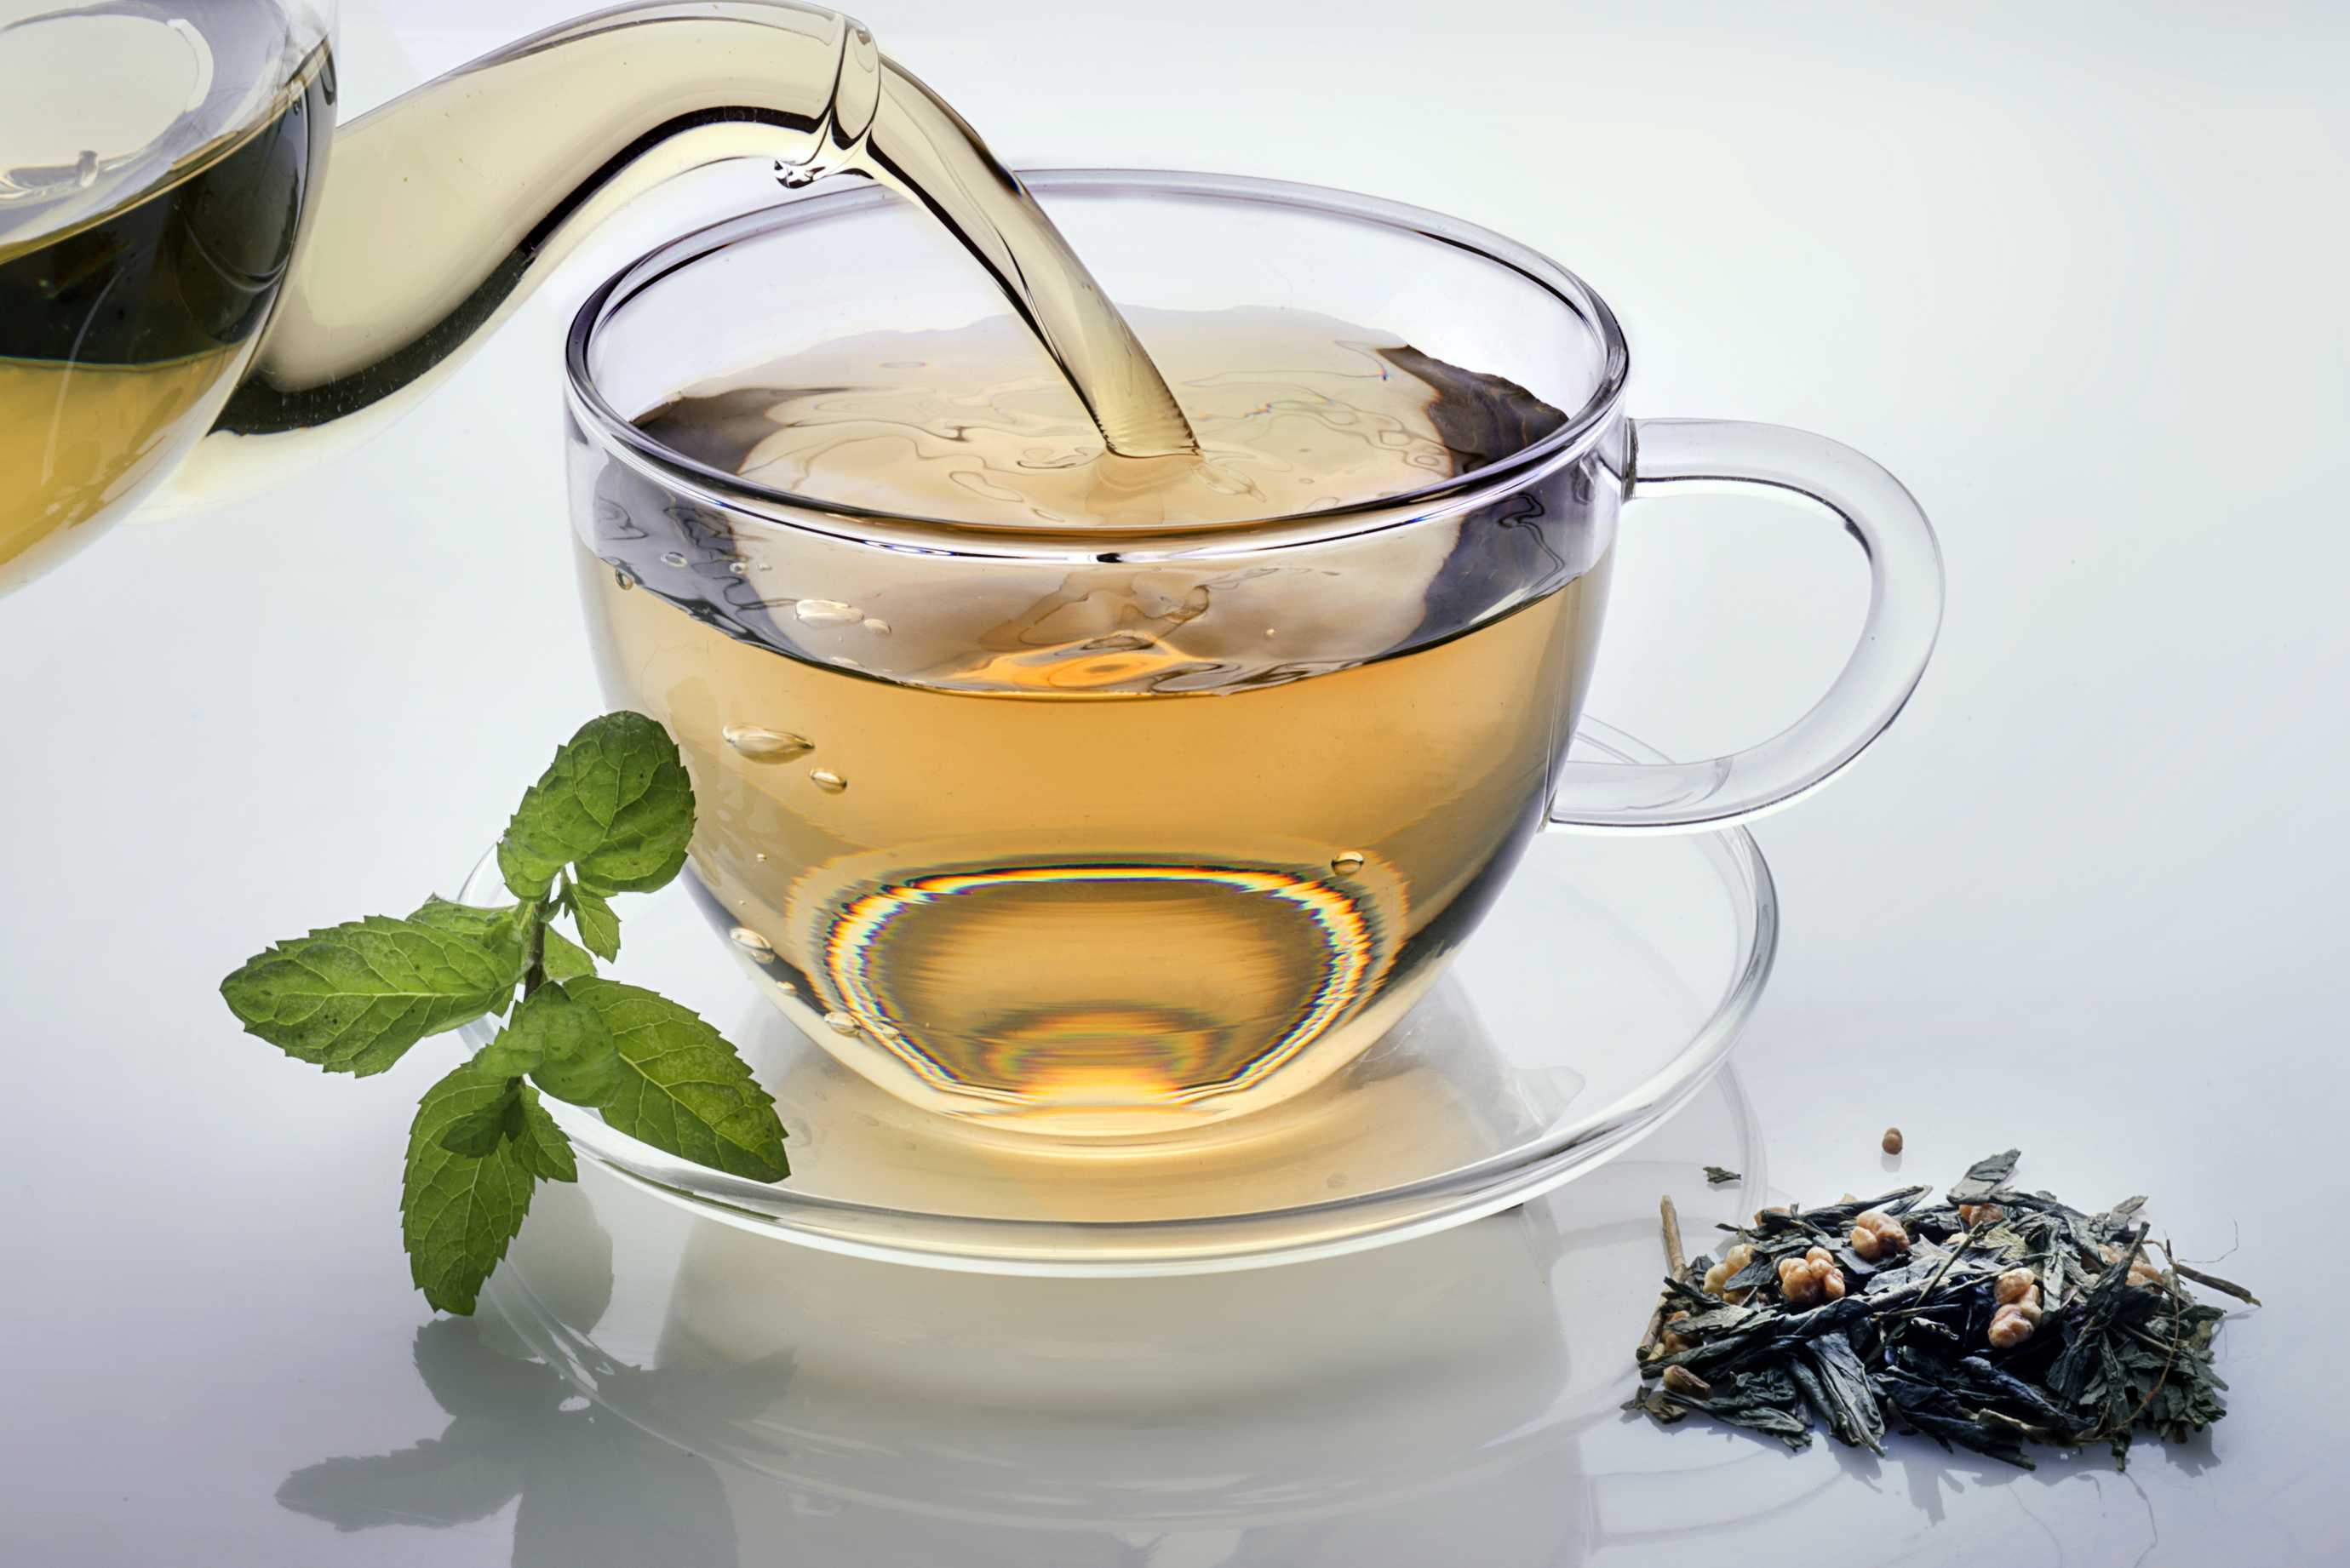 microsoft, ist es gut, grünen tee zu nehmen? eine bewertung durch ernährungsexperten